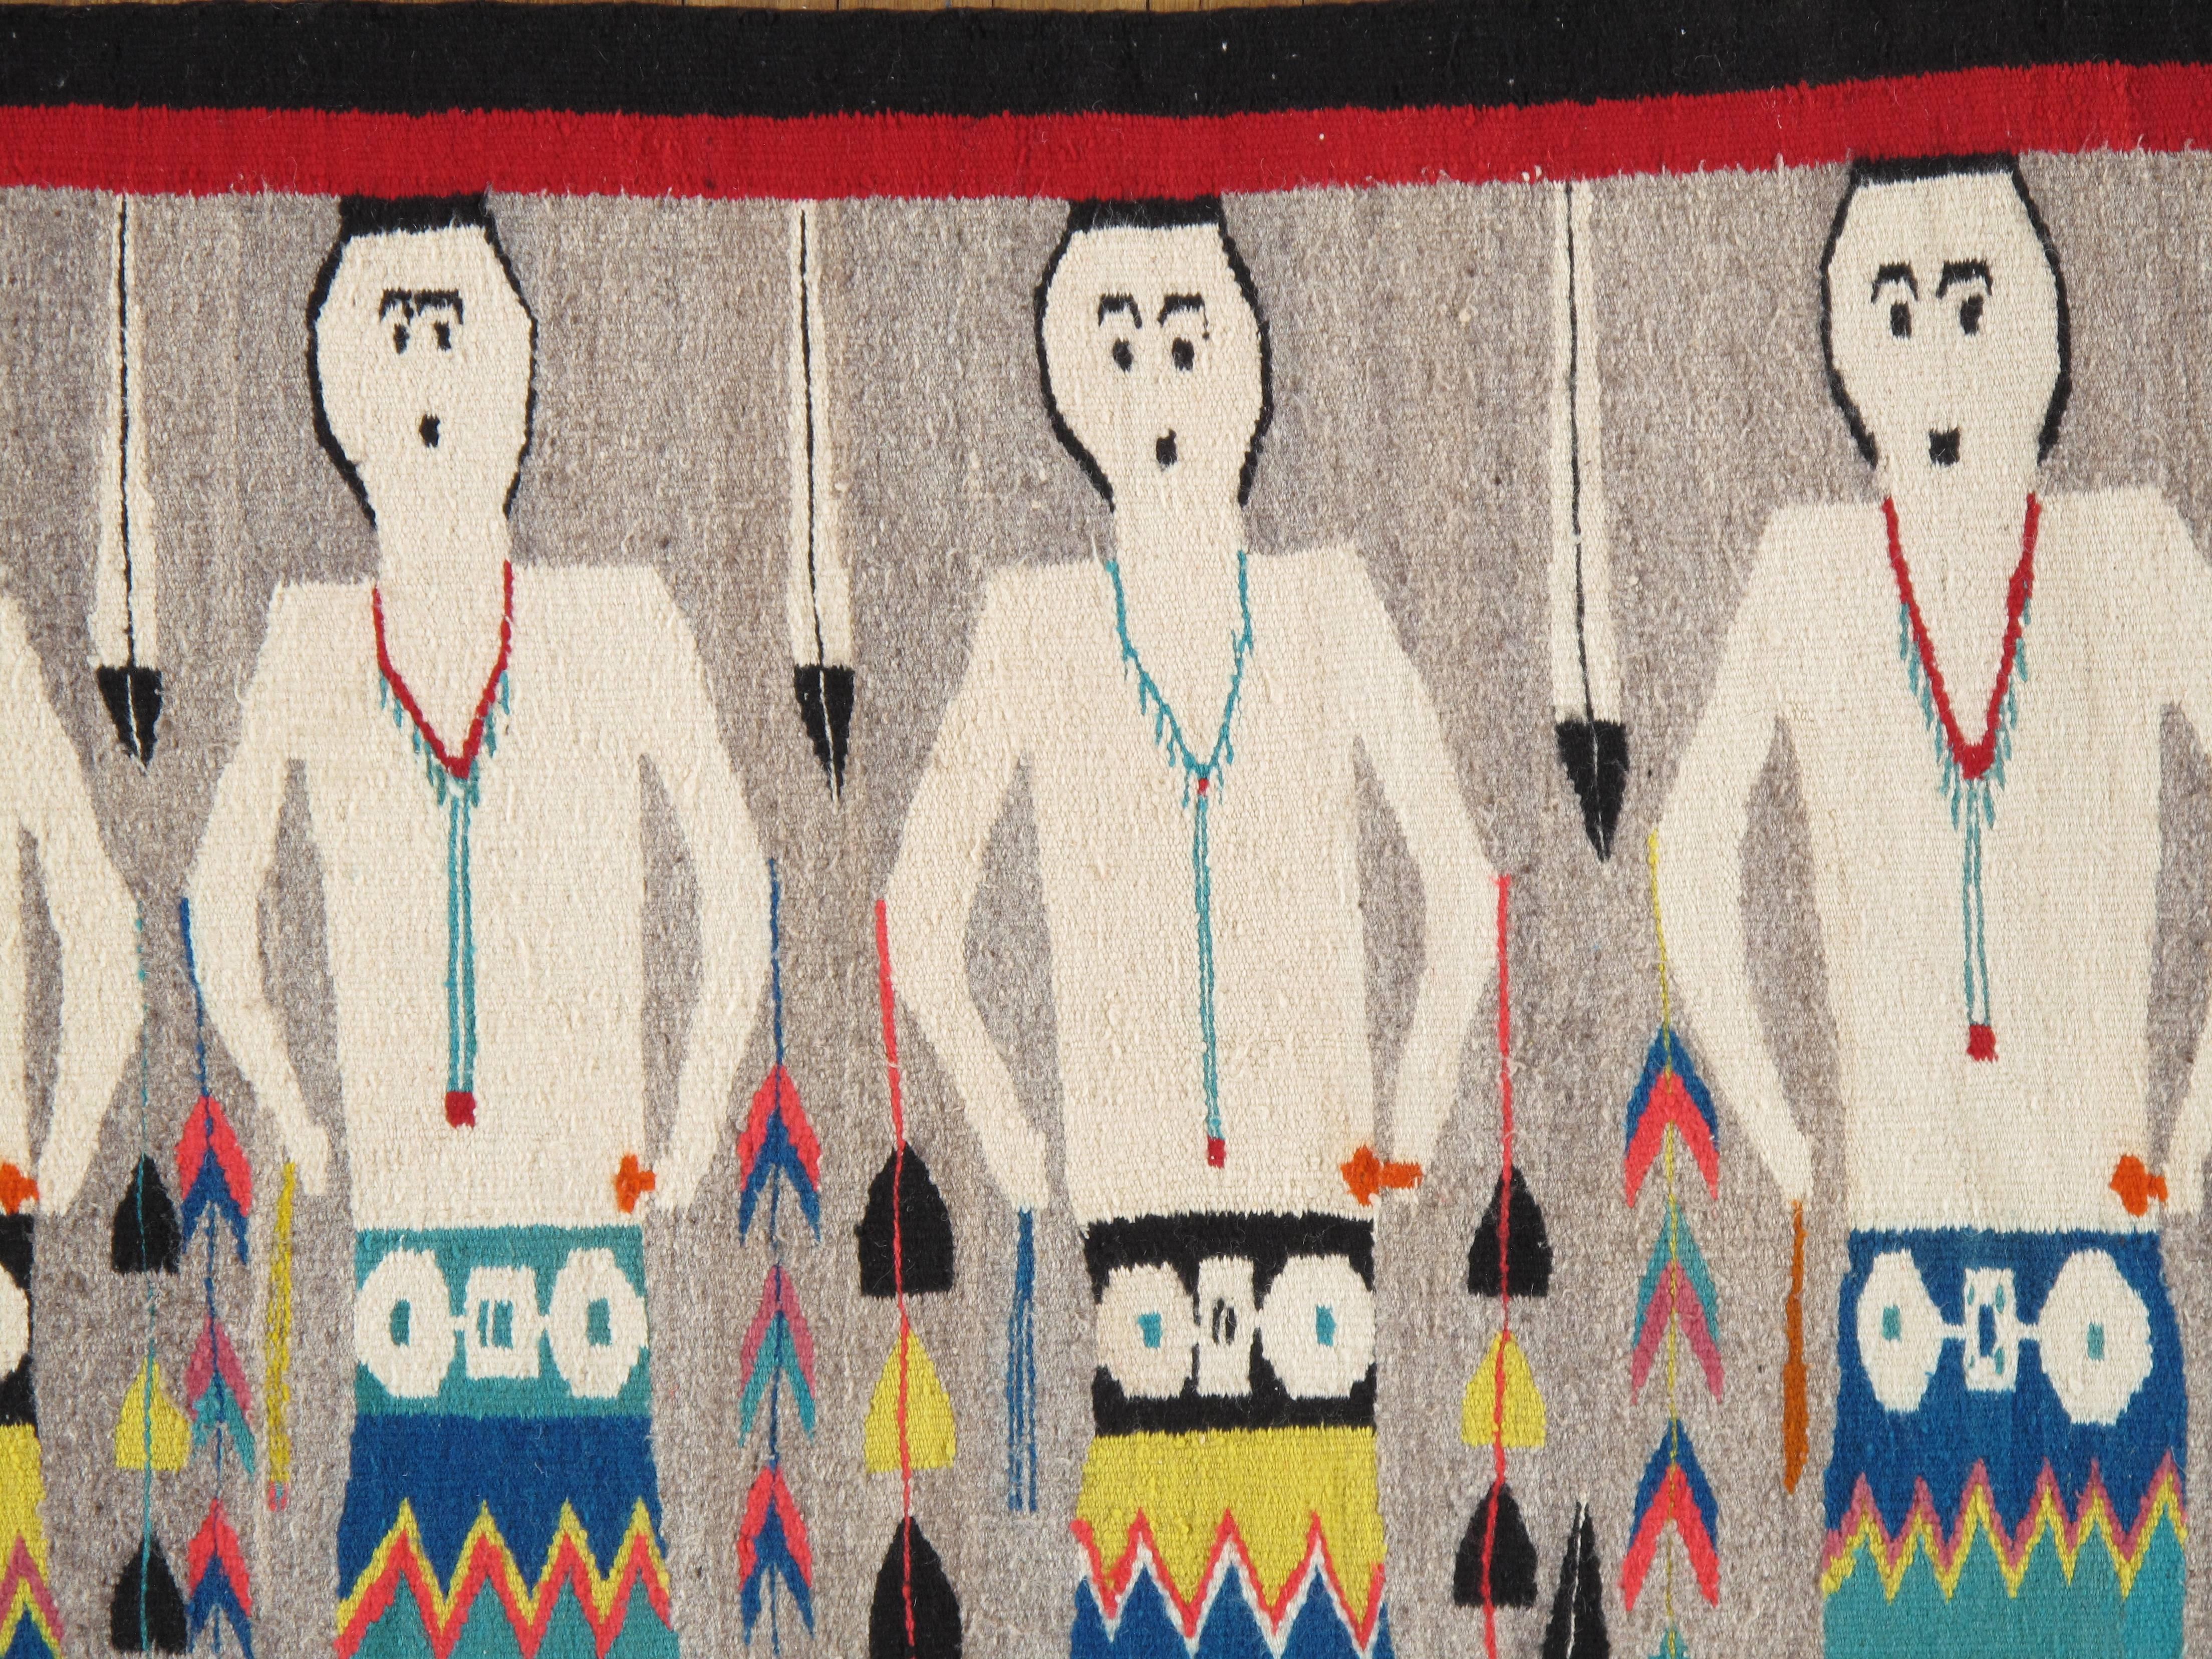 Navajo-Teppiche und -Decken sind Textilien, die vom Navajo-Volk im Gebiet der Four Corners in den Vereinigten Staaten hergestellt werden. Navajo-Textilien genießen ein hohes Ansehen und sind seit über 150 Jahren als Handelsware begehrt. Diese